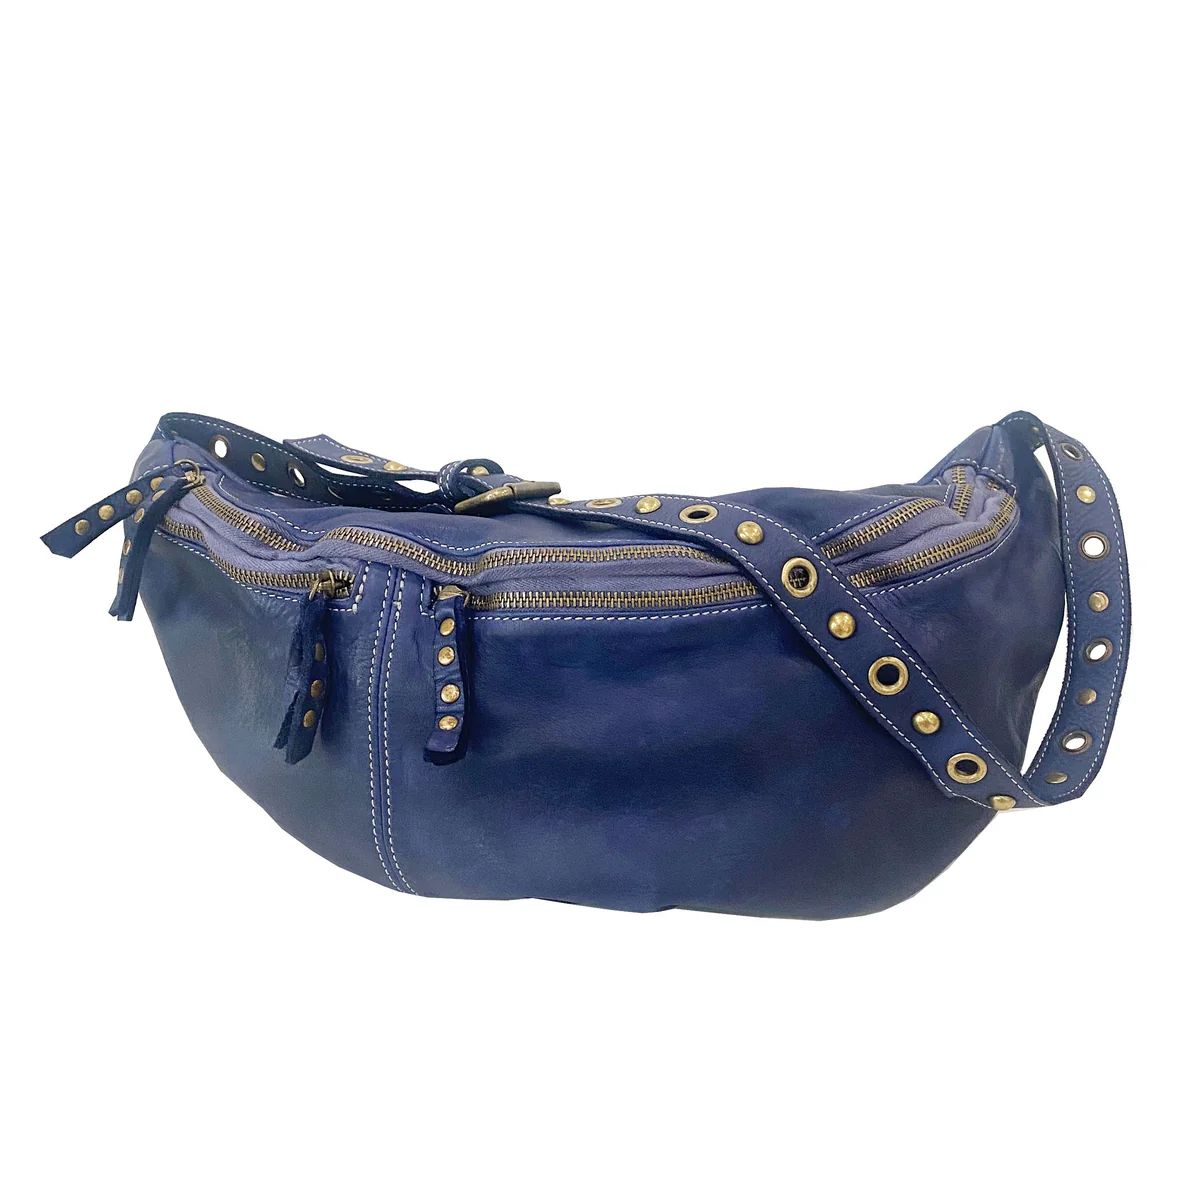 Bella Large Sling in Navy | Bolsa Nova Handbags